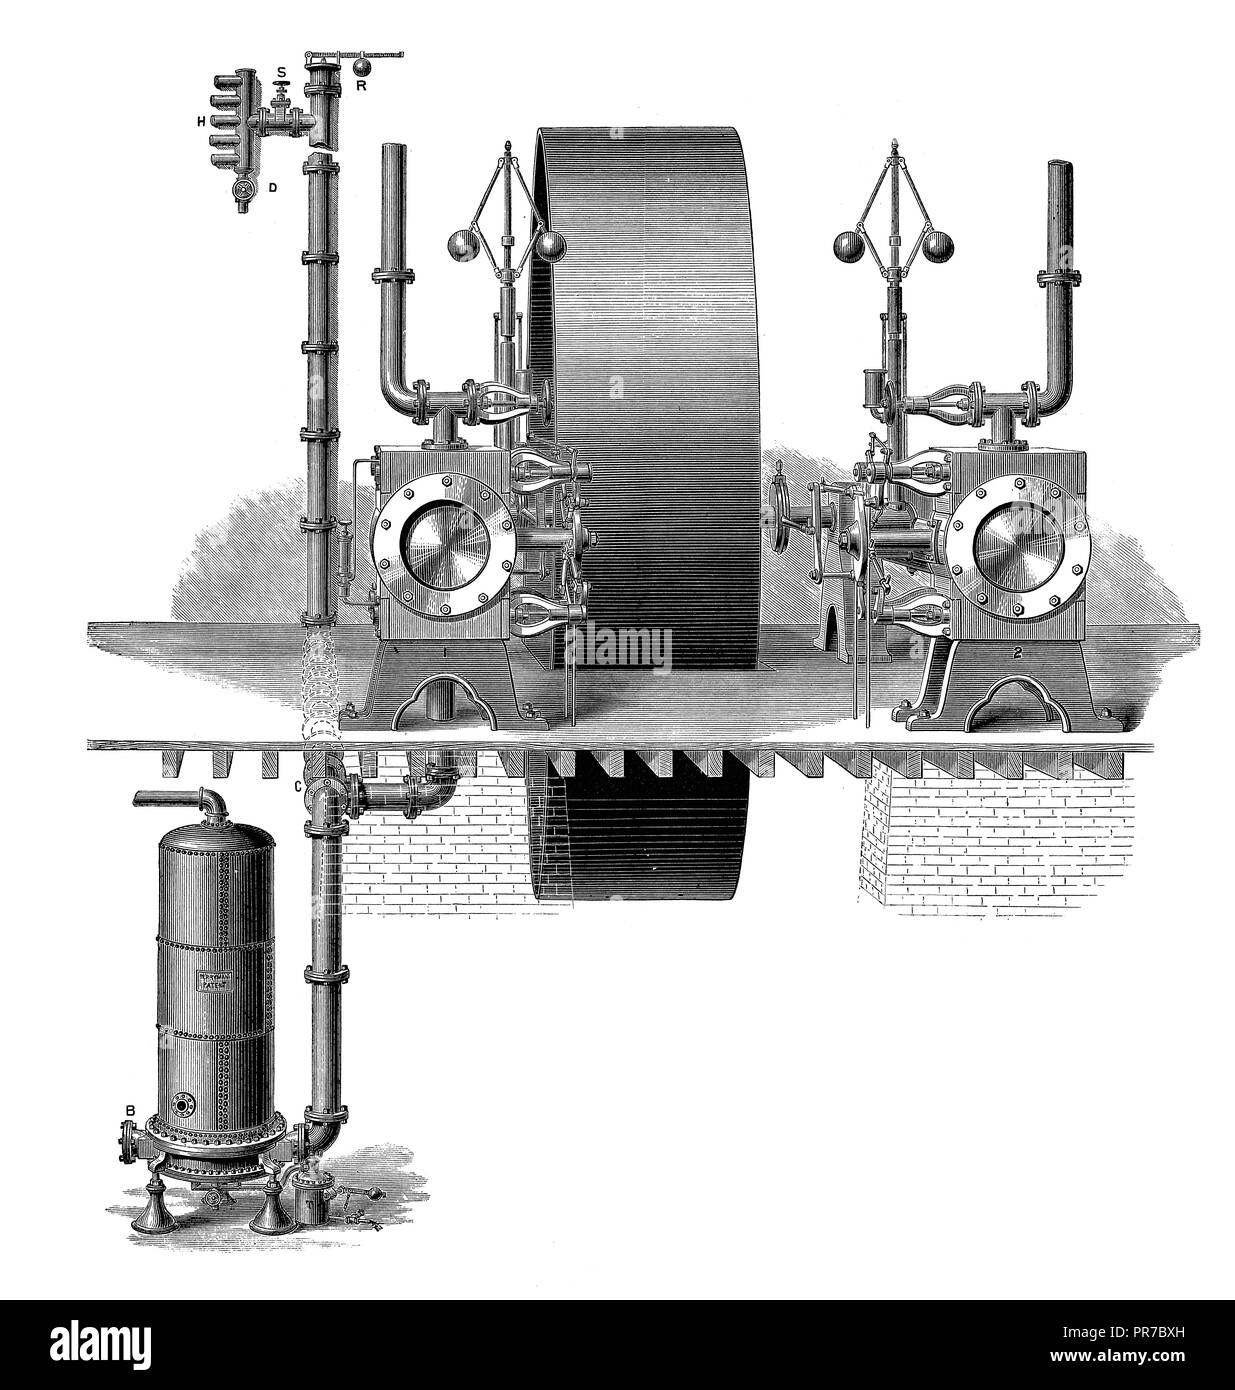 19ème siècle illustration de l'appareil de chauffage de l'usine de Berryman. Inventé par l'Américain Robert Berryman à la fin du xixe siècle. Publié dans 'e Banque D'Images